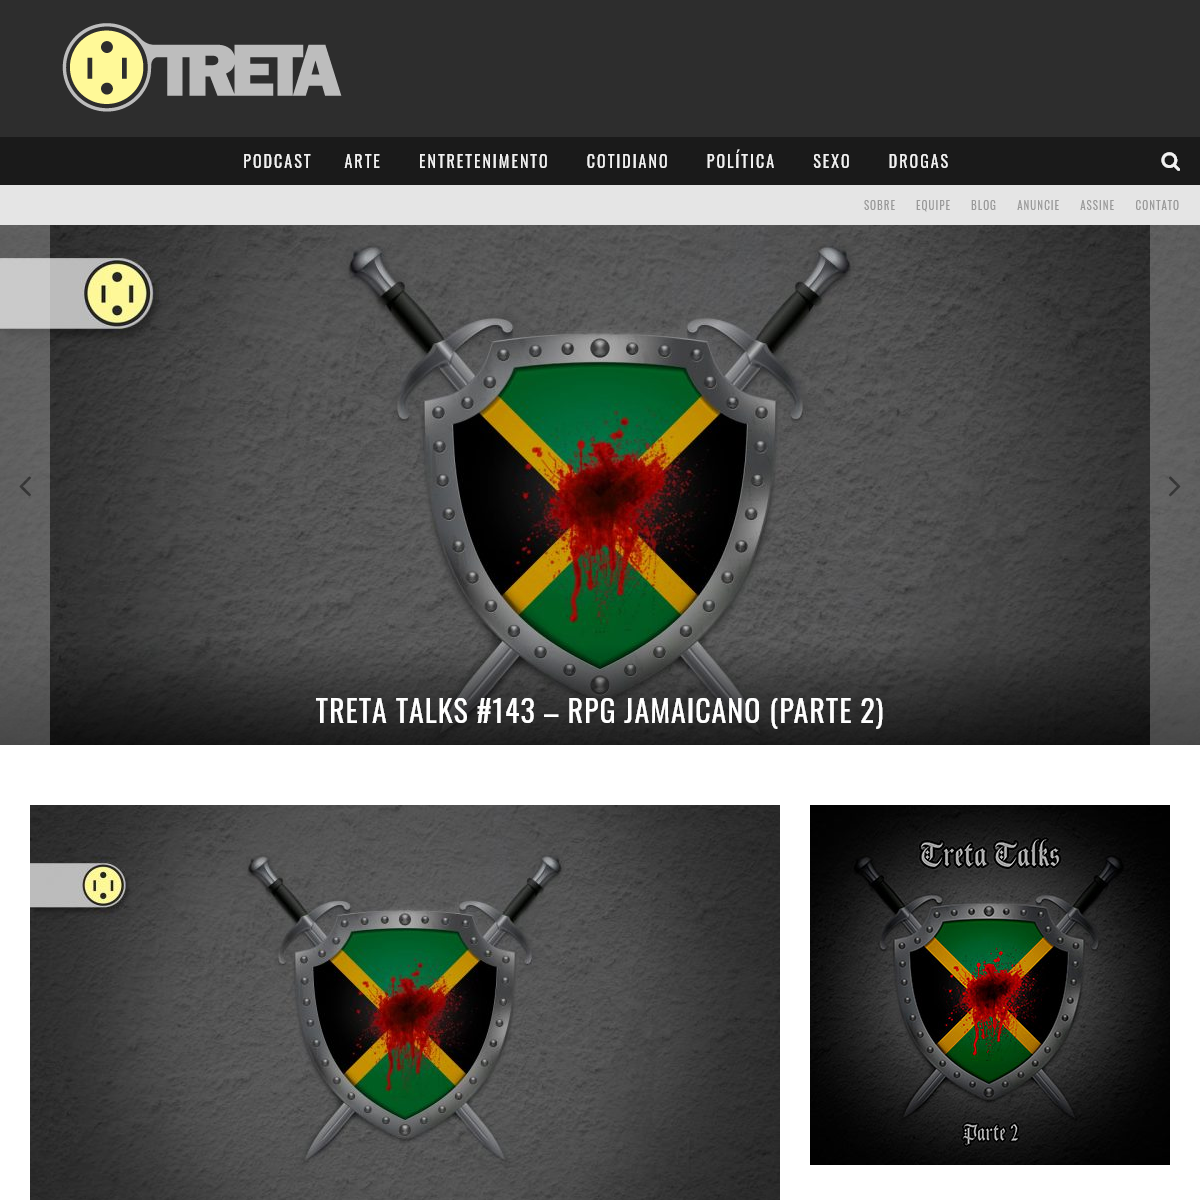 A complete backup of treta.com.br